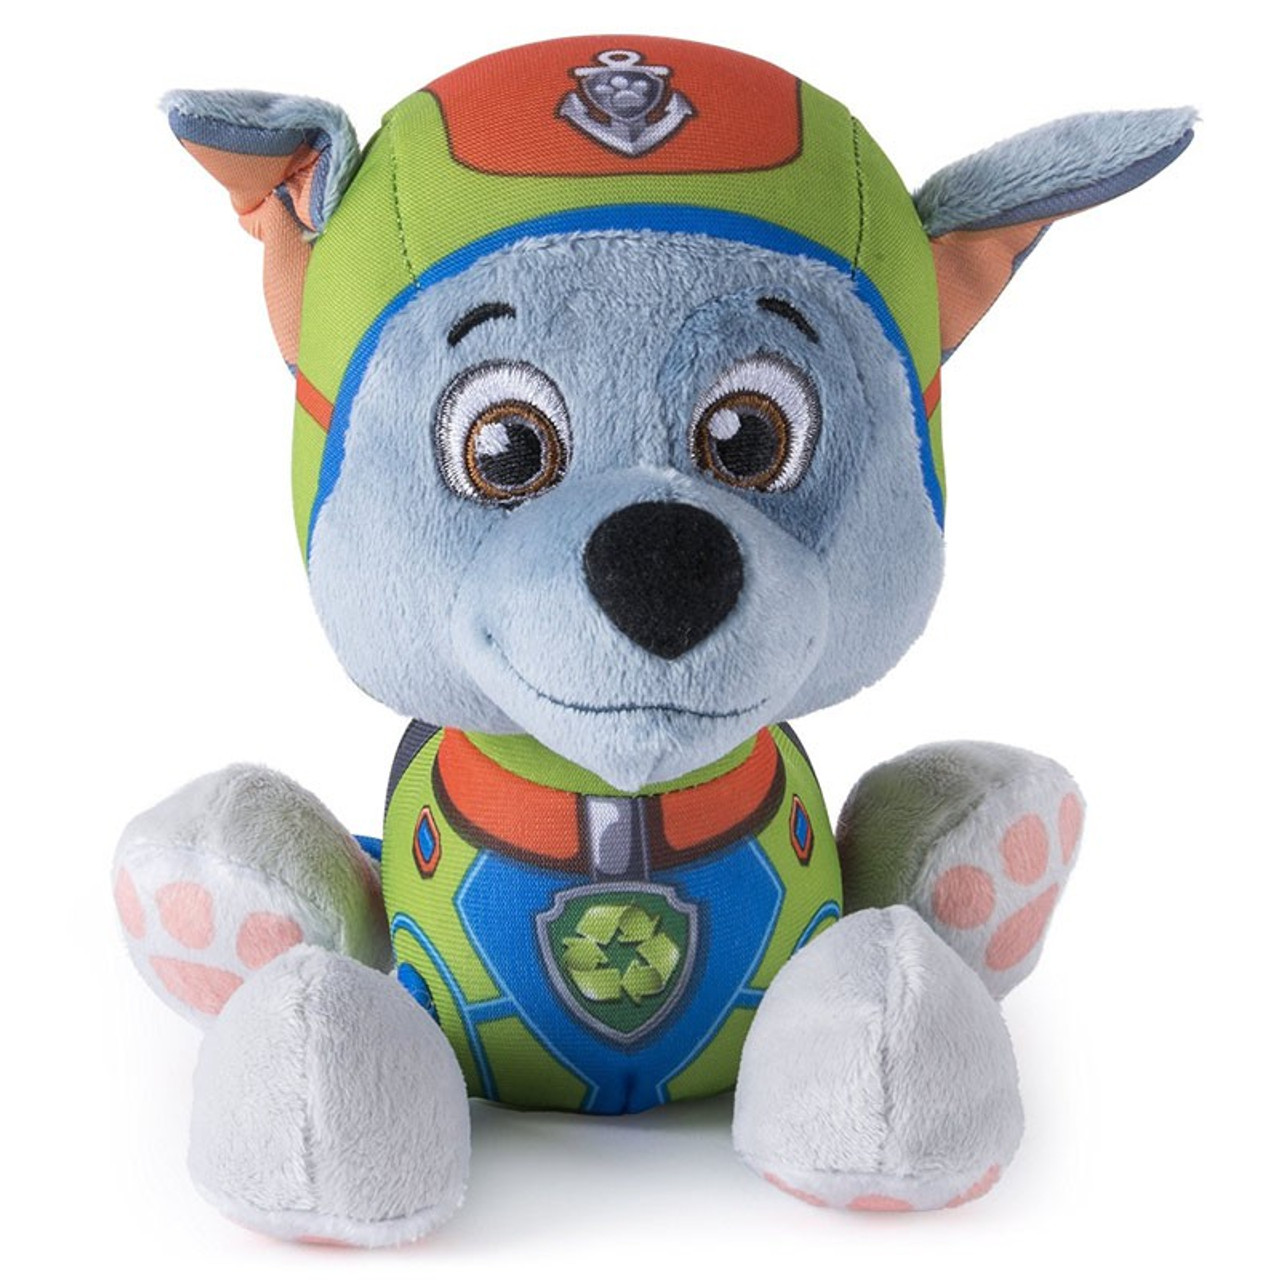 paw patrol rocky plush toy